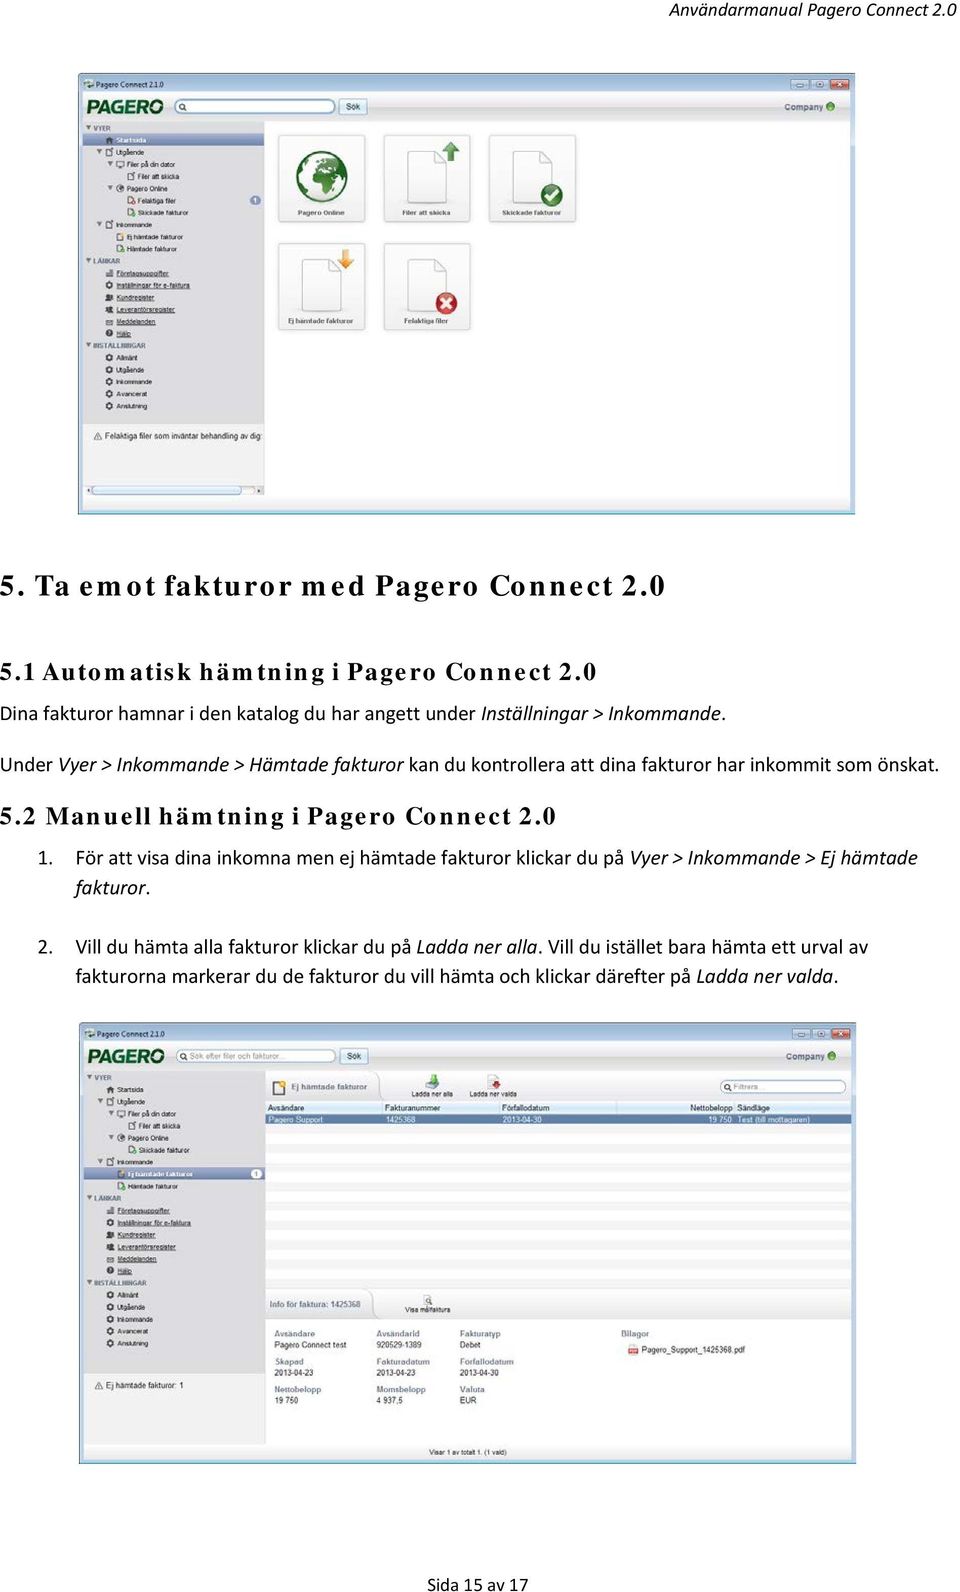 Under Vyer > Inkommande > Hämtade fakturor kan du kontrollera att dina fakturor har inkommit som önskat. 5.2 Manuell hämtning i Pagero Connect 2.0 1.